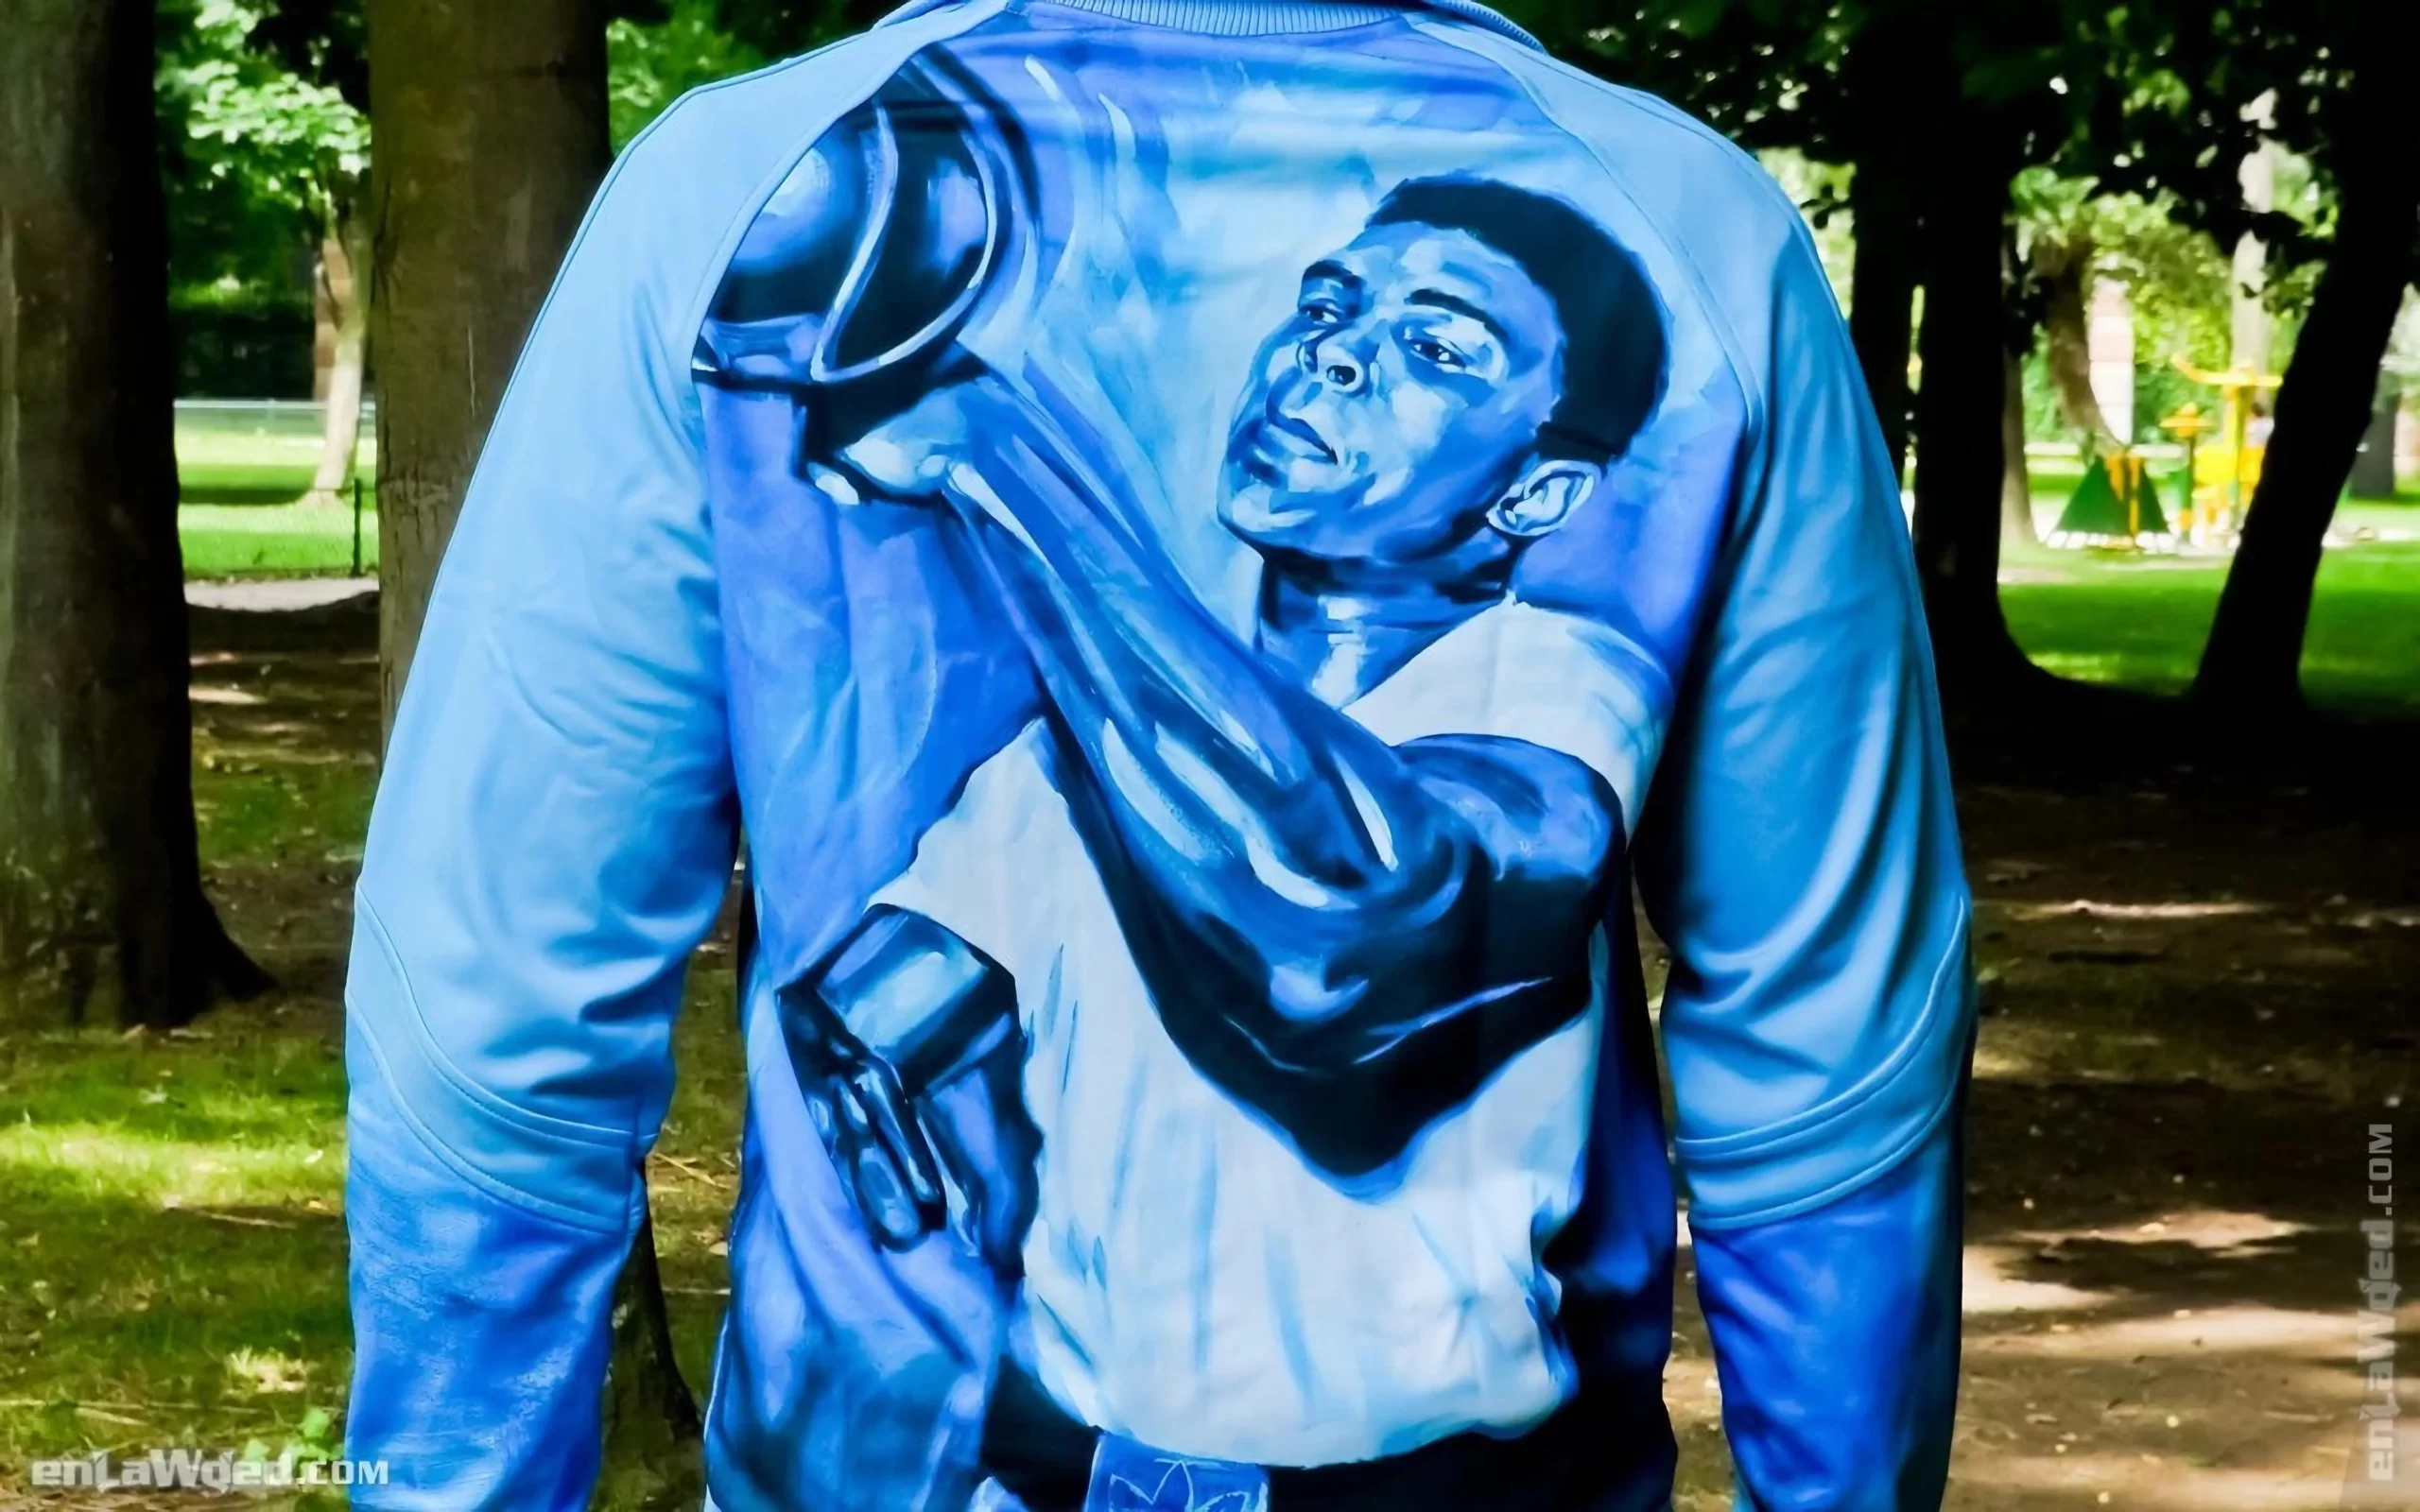 Men’s 2007 Muhammad Ali Dedication TT by Adidas: Grateful (EnLawded.com file #lmc52dimffapwctyjc8)